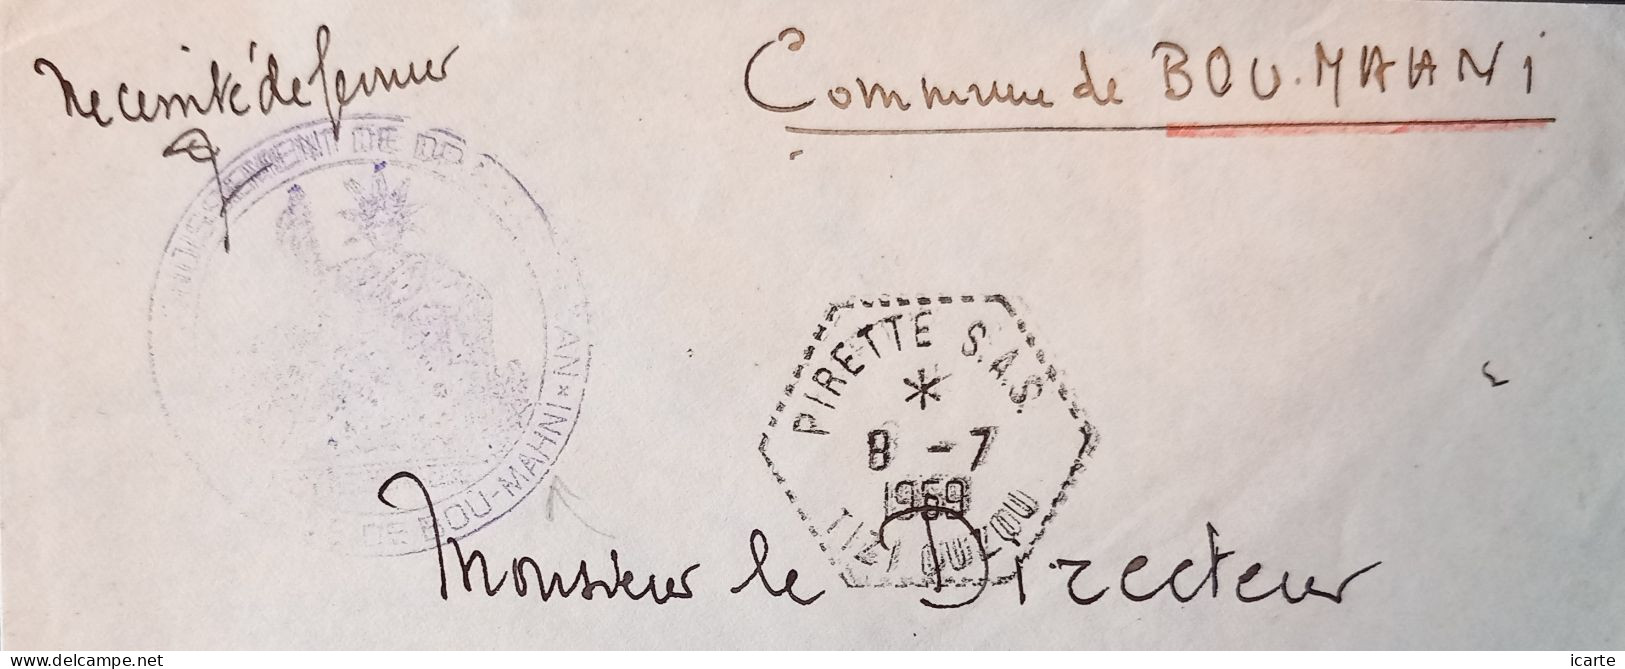 Oblitération Hexagonale Tiretée PIRETTE S.A.S. Et Cachet Bou-Mahni Sur Lettre Du 8-7-1959 - Algerienkrieg